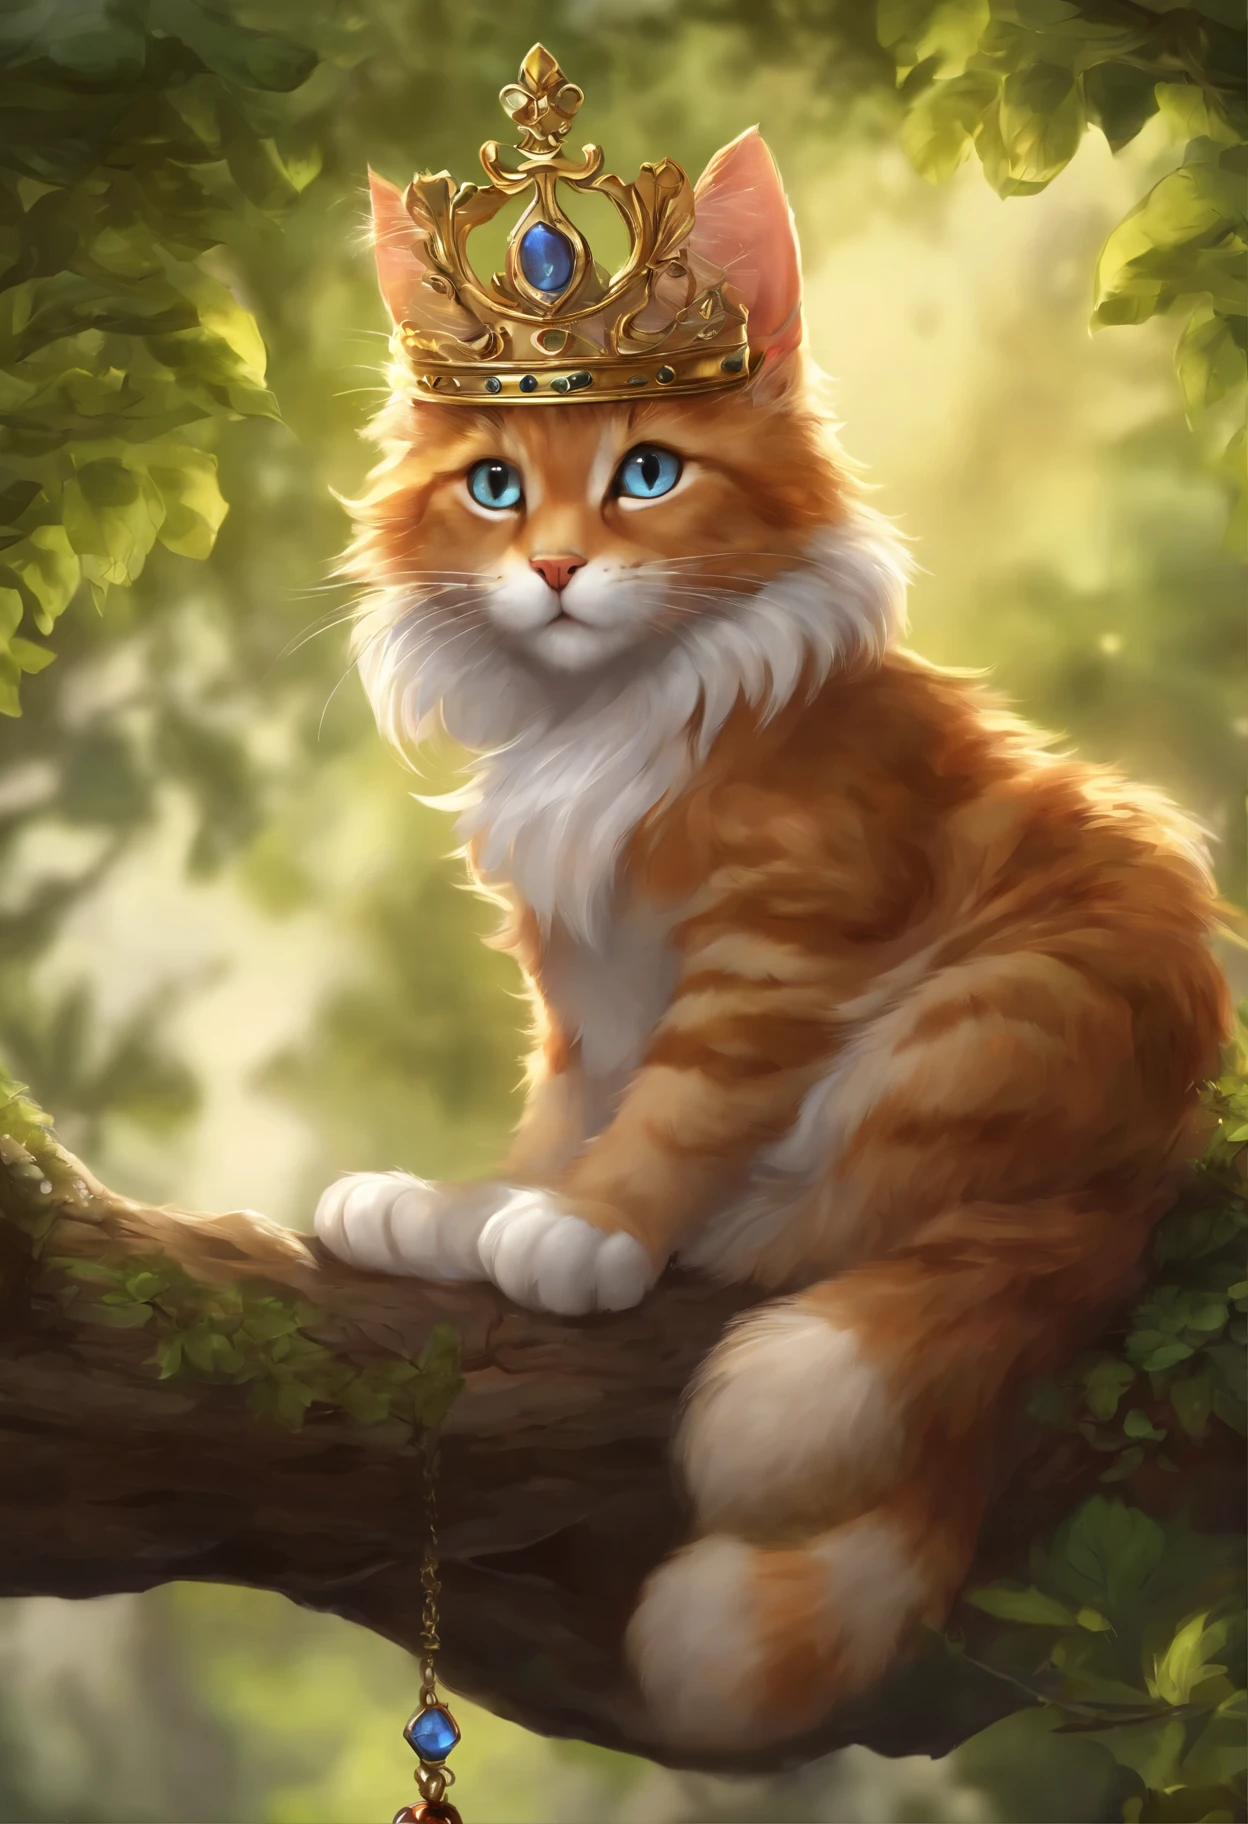 ビルマ猫 動物 イラスト 王冠 クラウンビルマ猫イラストイラスト画像とPSDフリー素材透過の無料ダウンロード - Pngtree